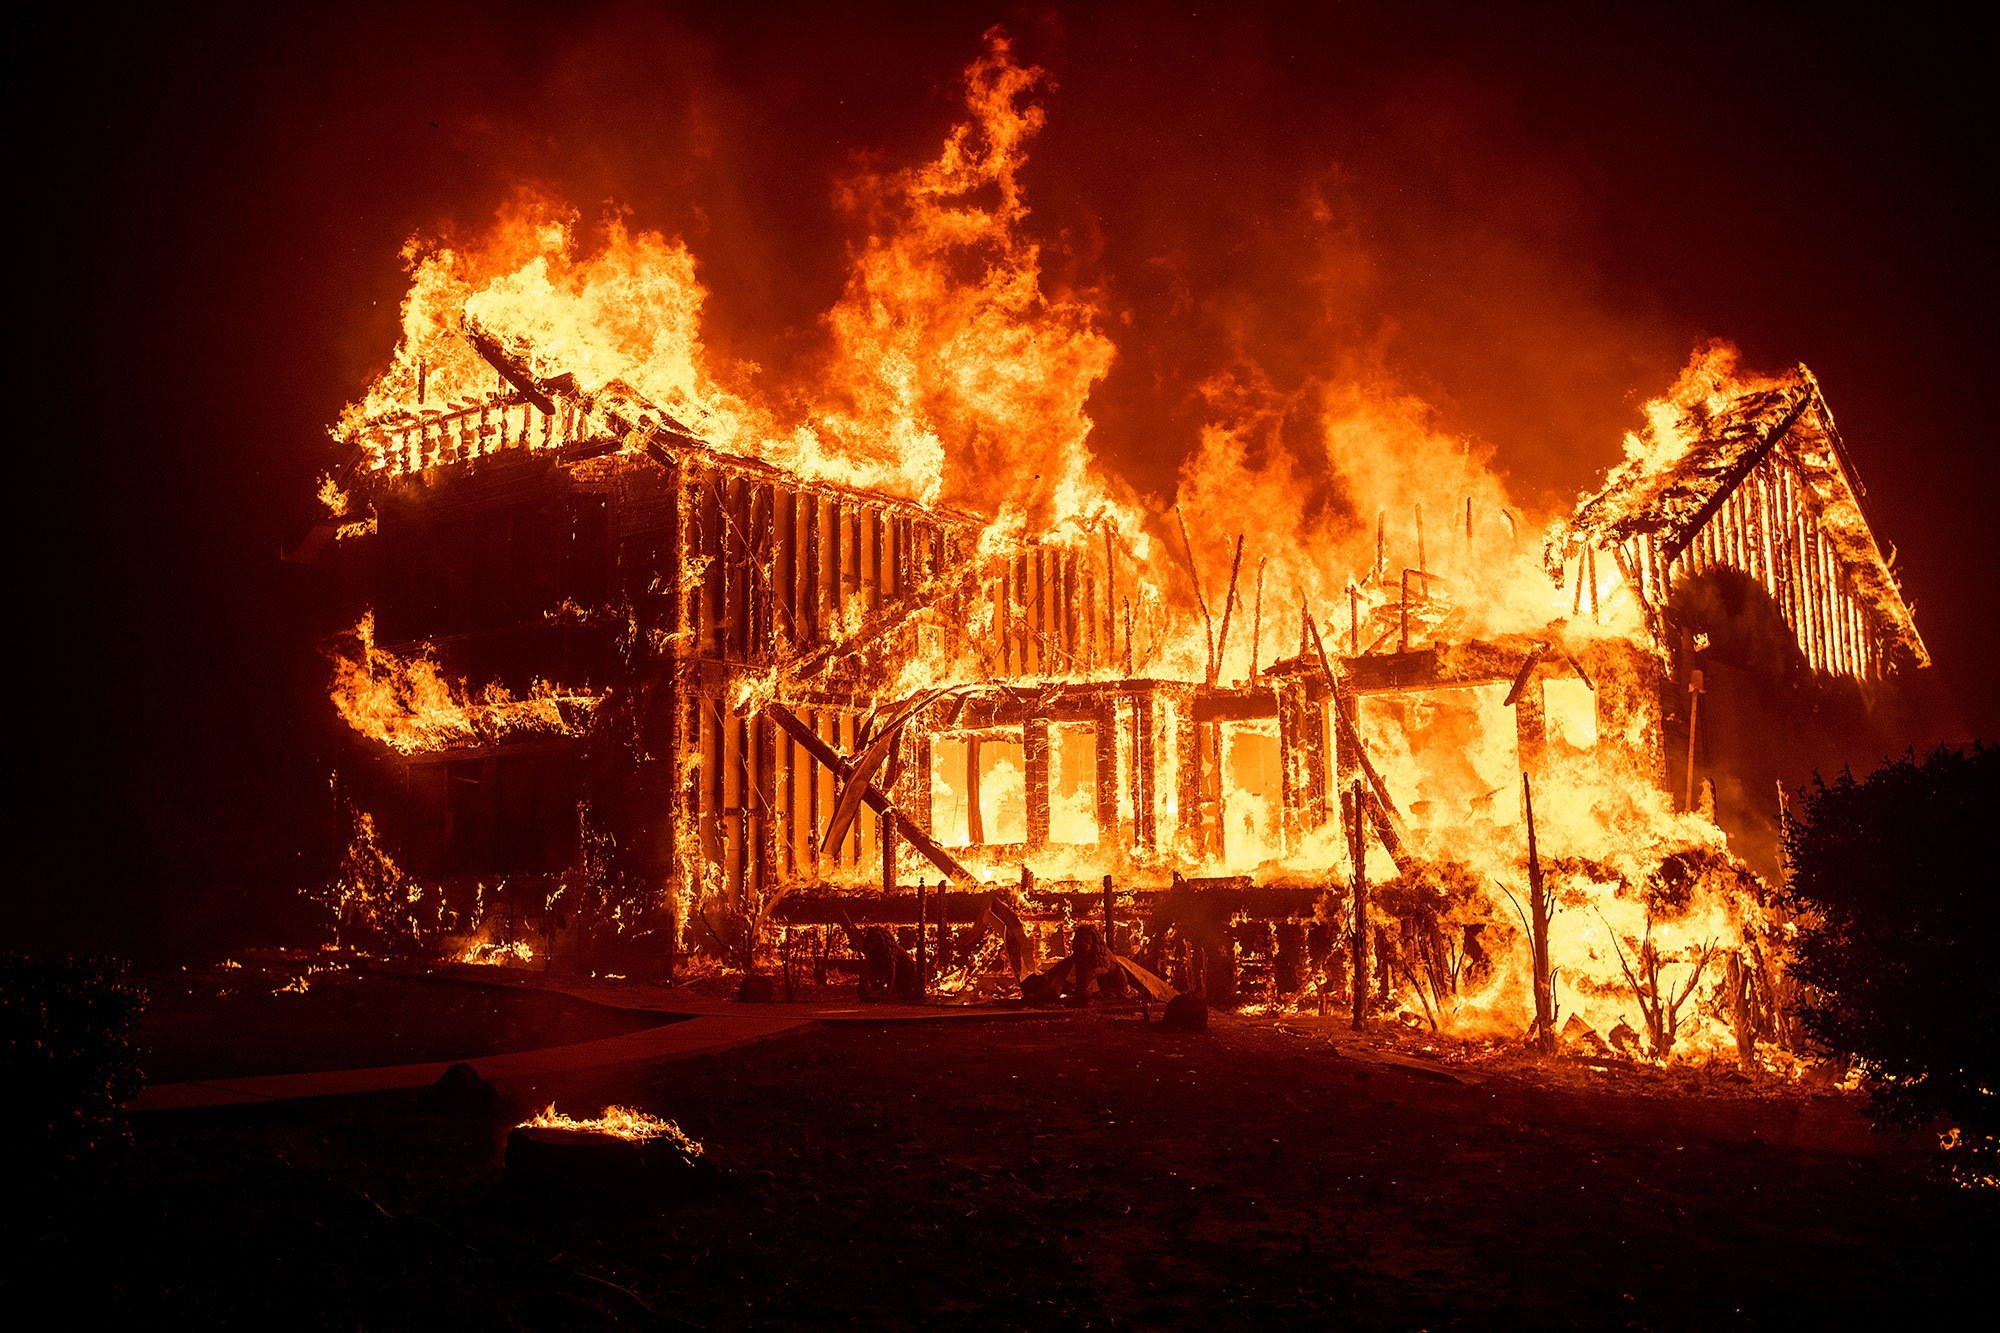 Дом в собственности сгорел